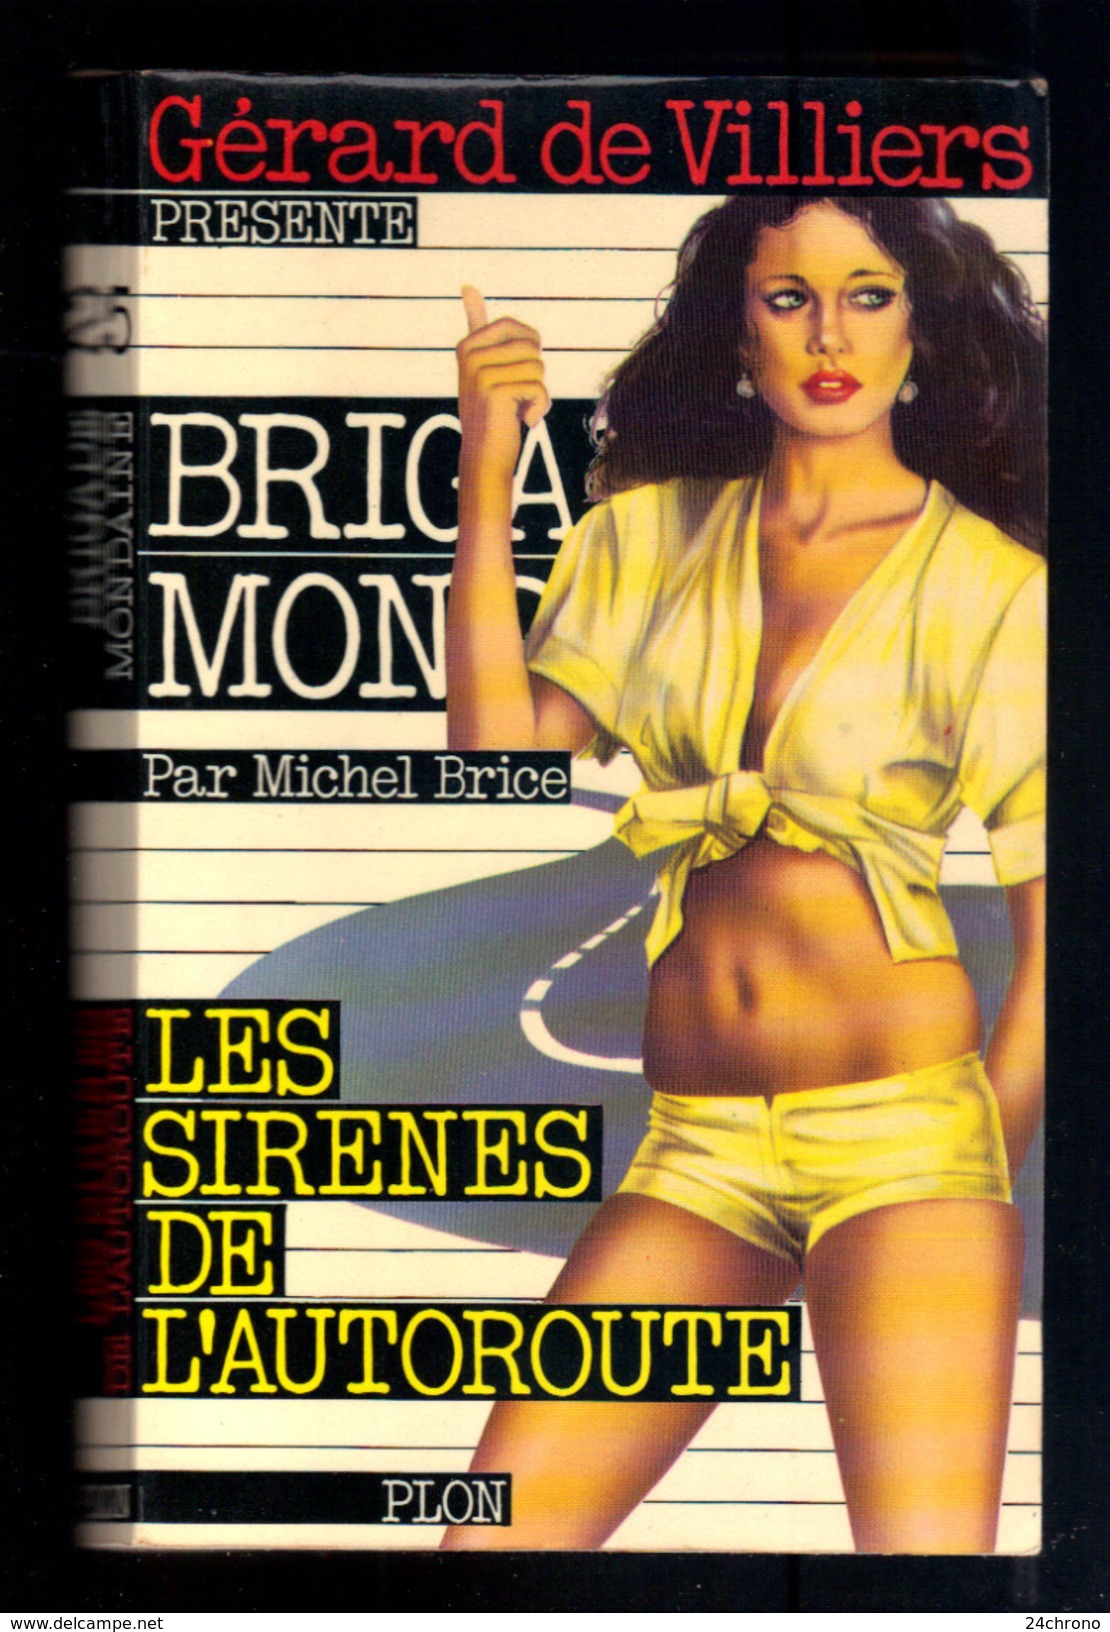 Livre: Gerard De Villiers, Brigade Mondaine Par Michel Brice, Les Sirenes De L'Autoroute (16-2893) - Gerard De Villiers